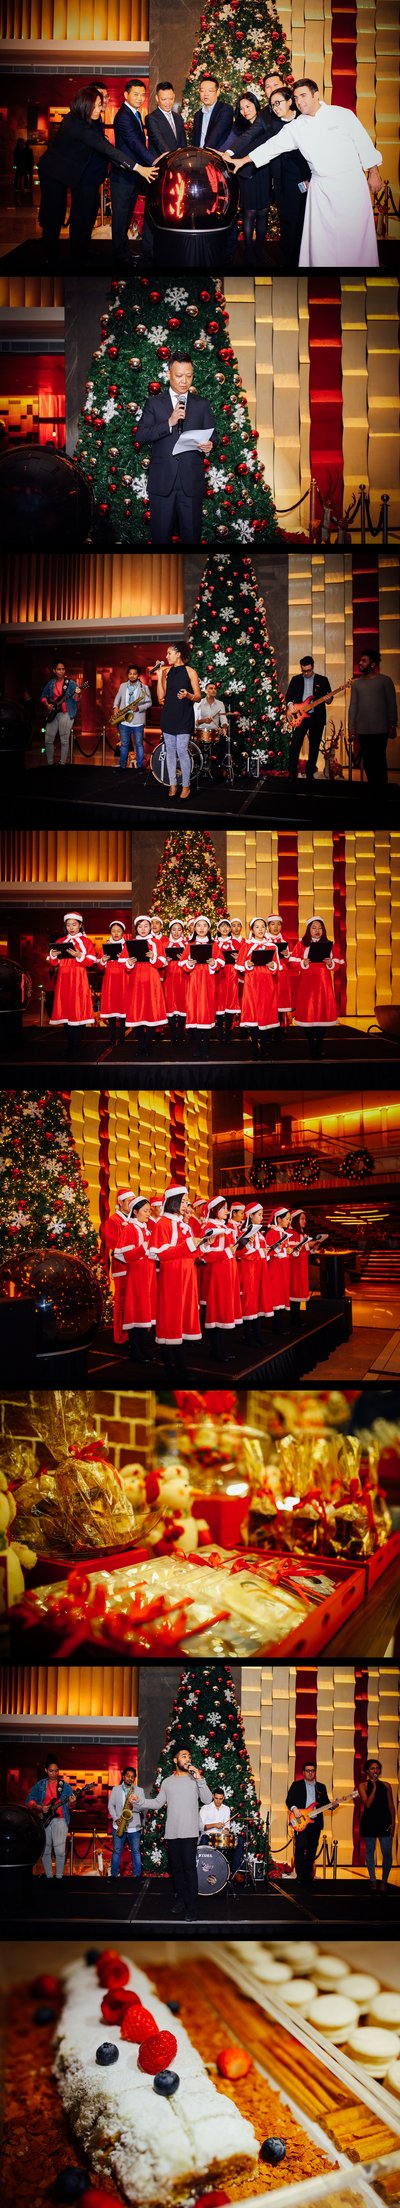 长沙君悦酒店圣诞亮灯仪式 -- 点亮君之悦 开启圣诞季